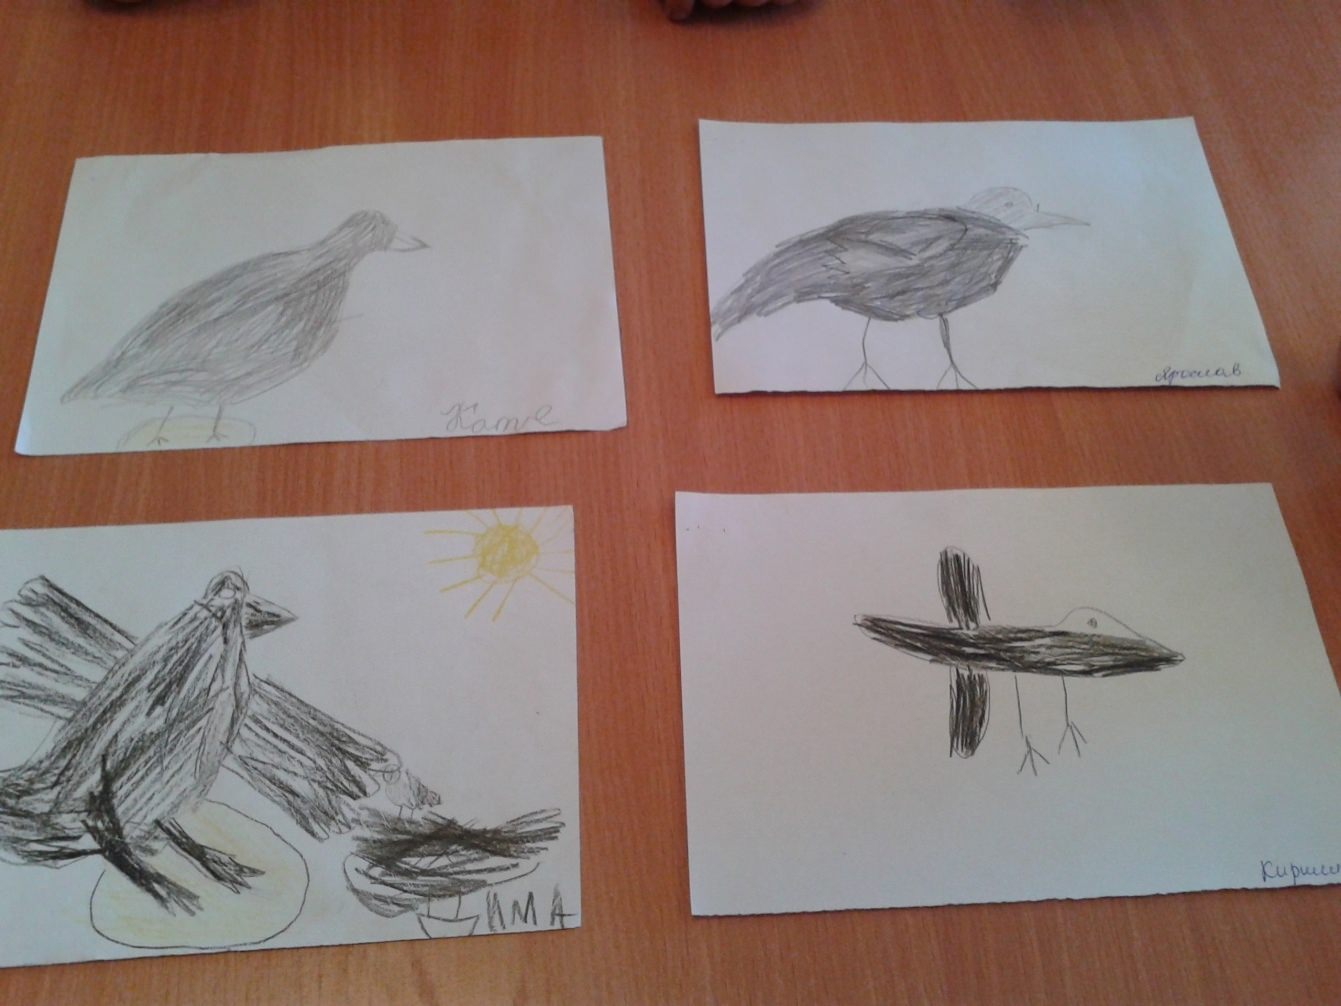 Конспект занятия по рисованию перелетные птицы